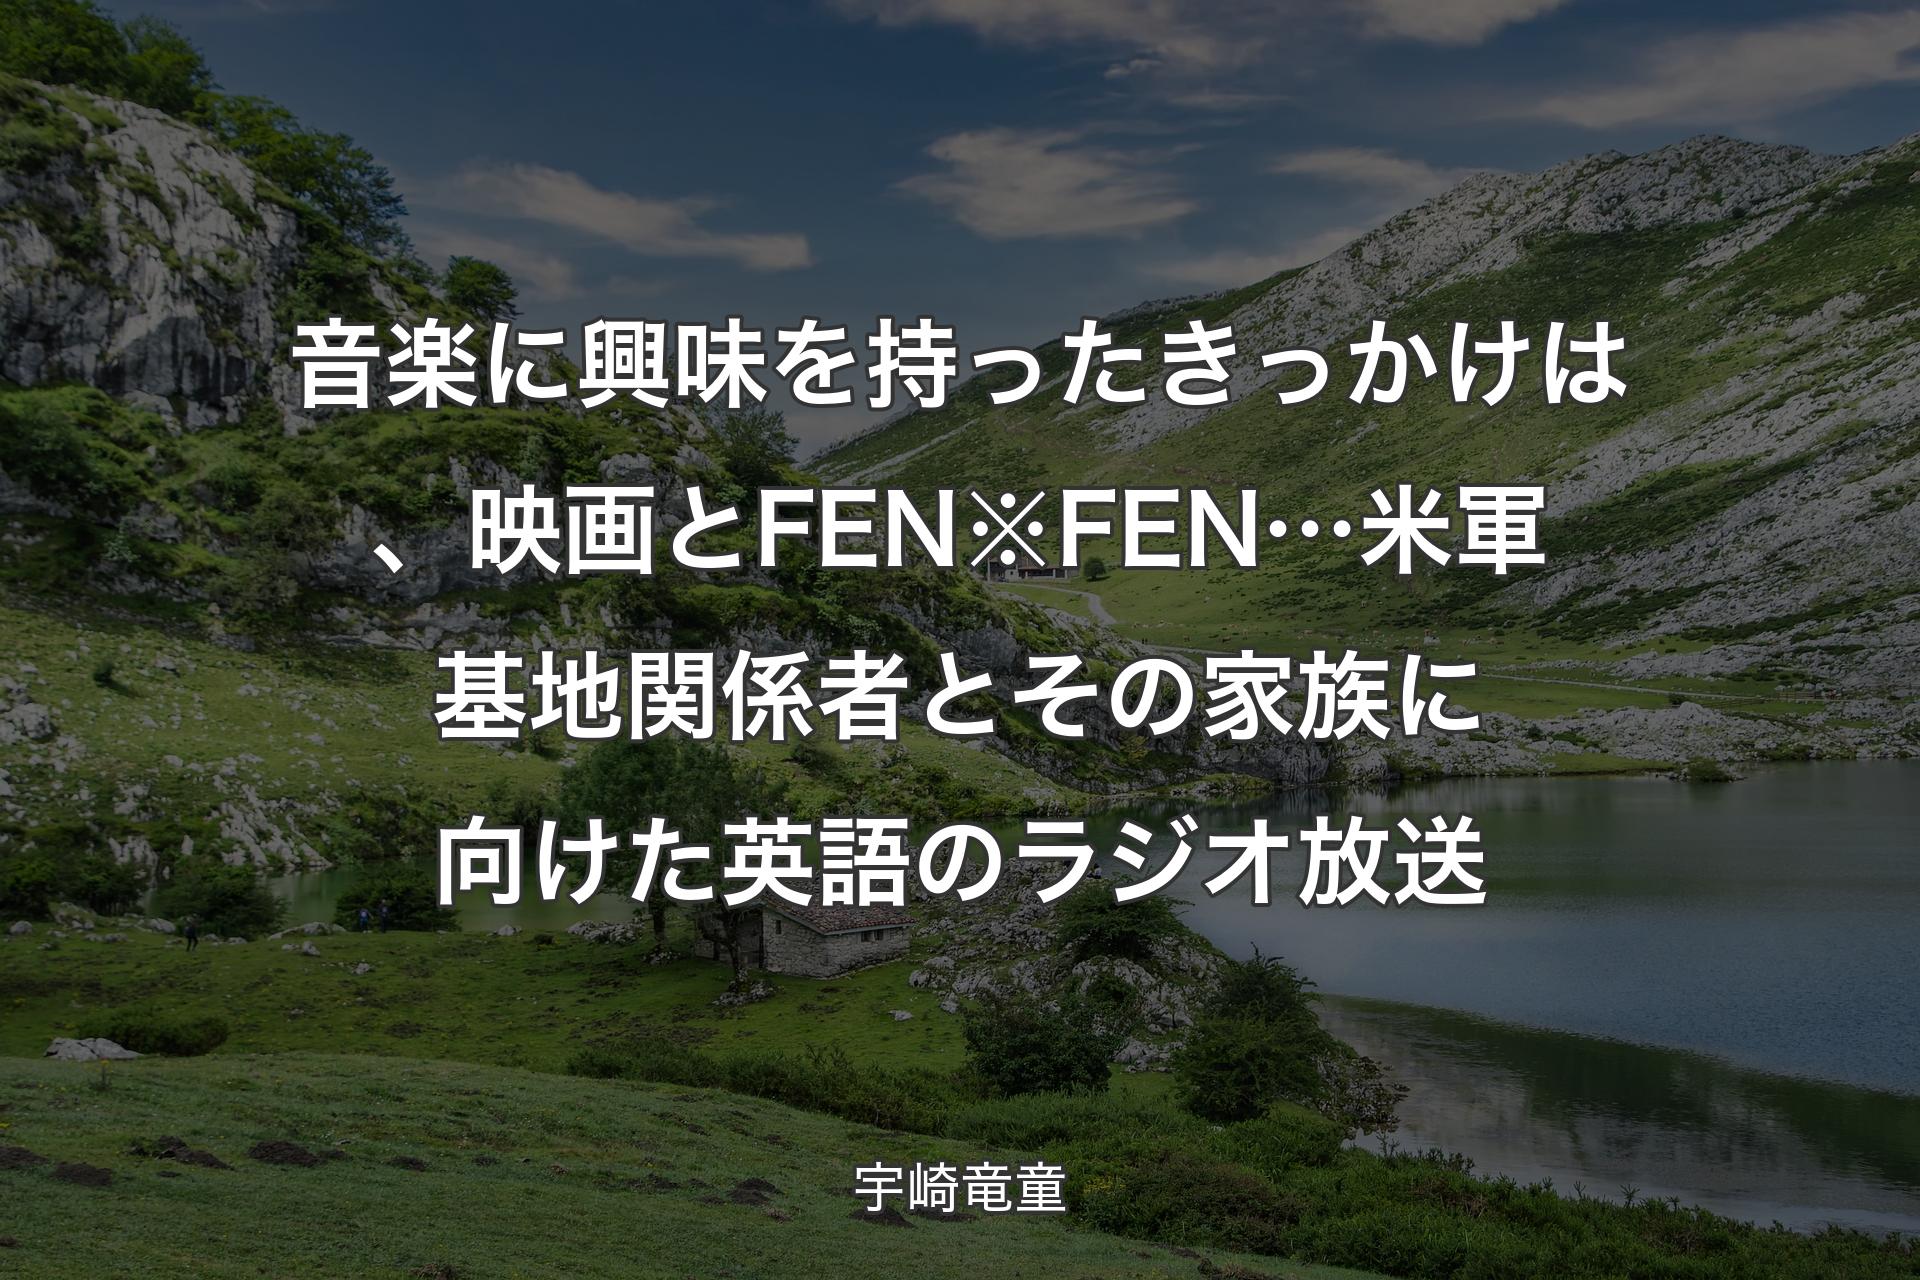 音楽に興味を持ったきっかけは、映画とFEN※FEN…米軍基地関係者とその家族に向けた英語のラジオ放送 - 宇崎竜童